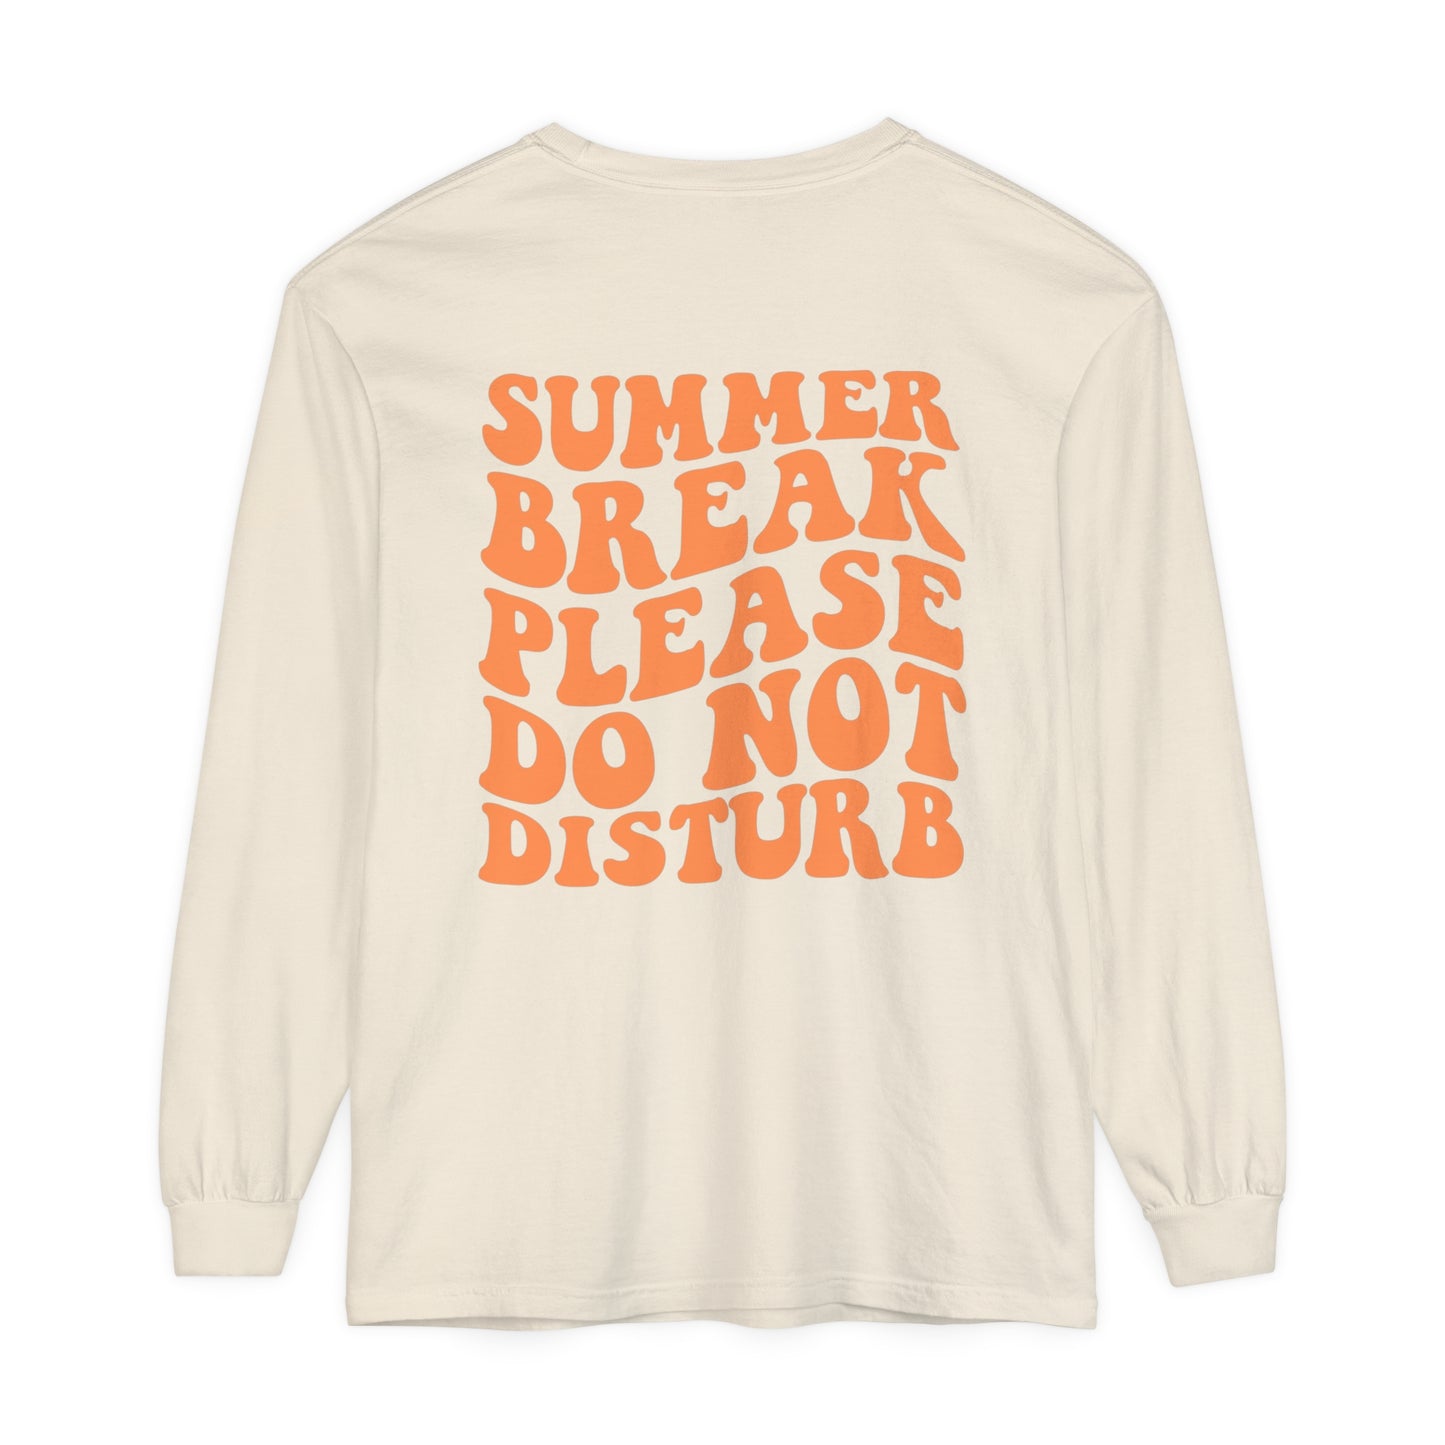 Summer Break Do Not Disturb Long Sleeve Comfort Colors T-Shirt